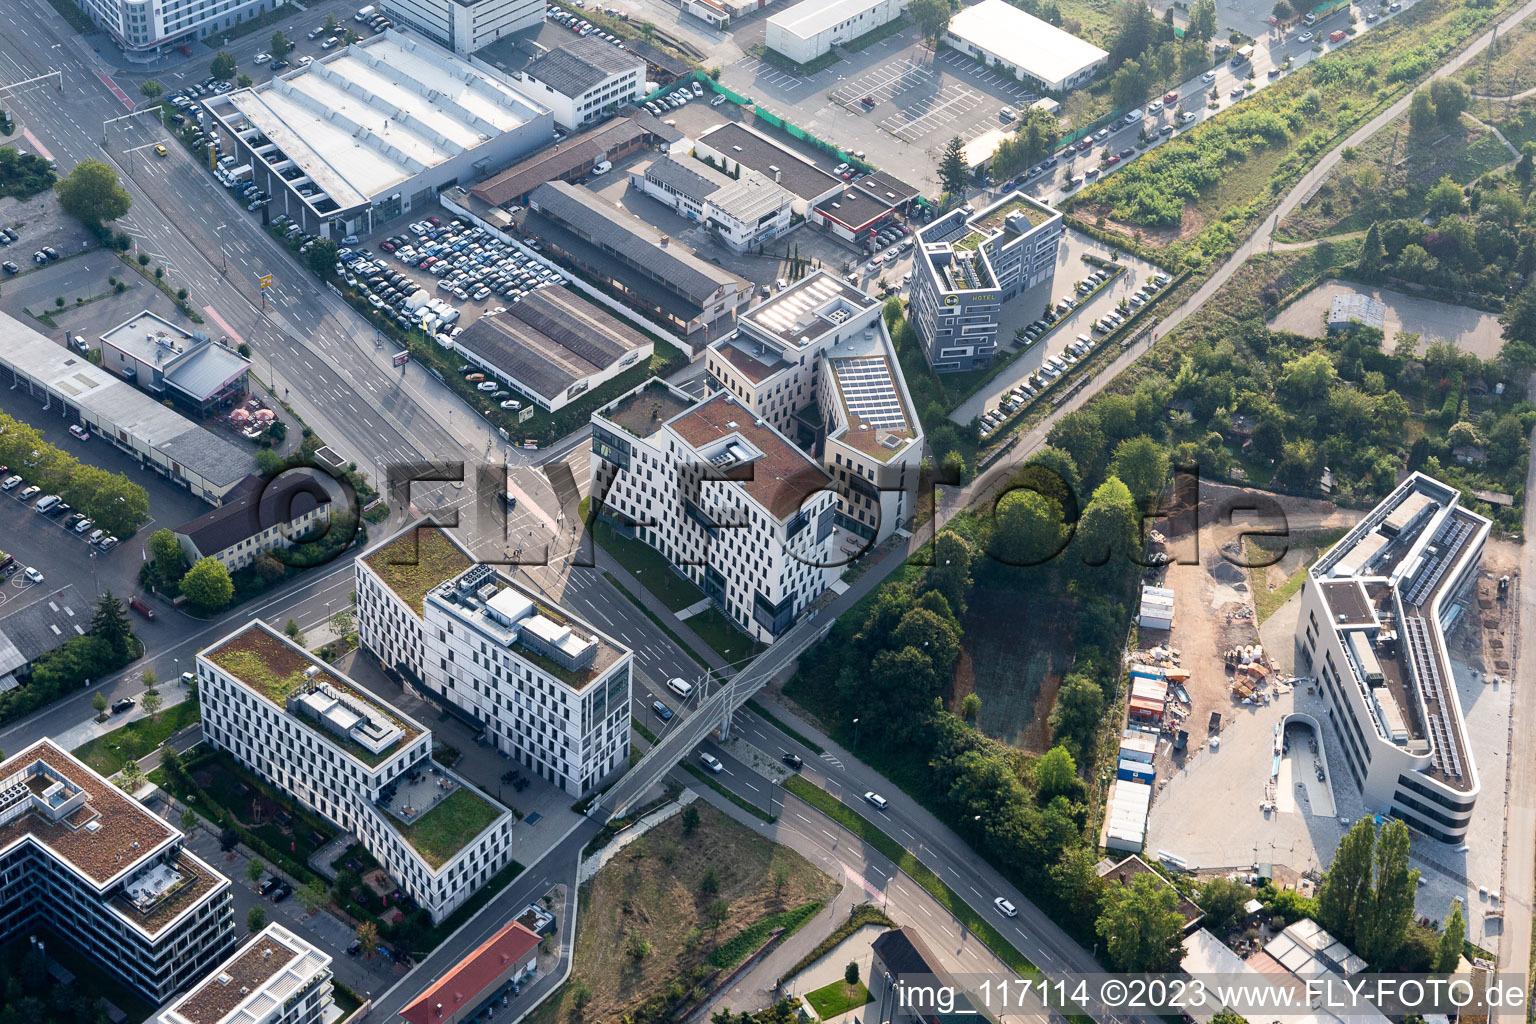 Vue aérienne de Chantier de construction du bâtiment entermedia GmbH à Bahnstadt, Speyerer Straße, le plus jeune quartier d'Heidelberg sur le site de l'ancienne gare de marchandises au sud de la ville dans la zone urbaine à le quartier Am Kirchheimer Weg in Heidelberg dans le département Bade-Wurtemberg, Allemagne